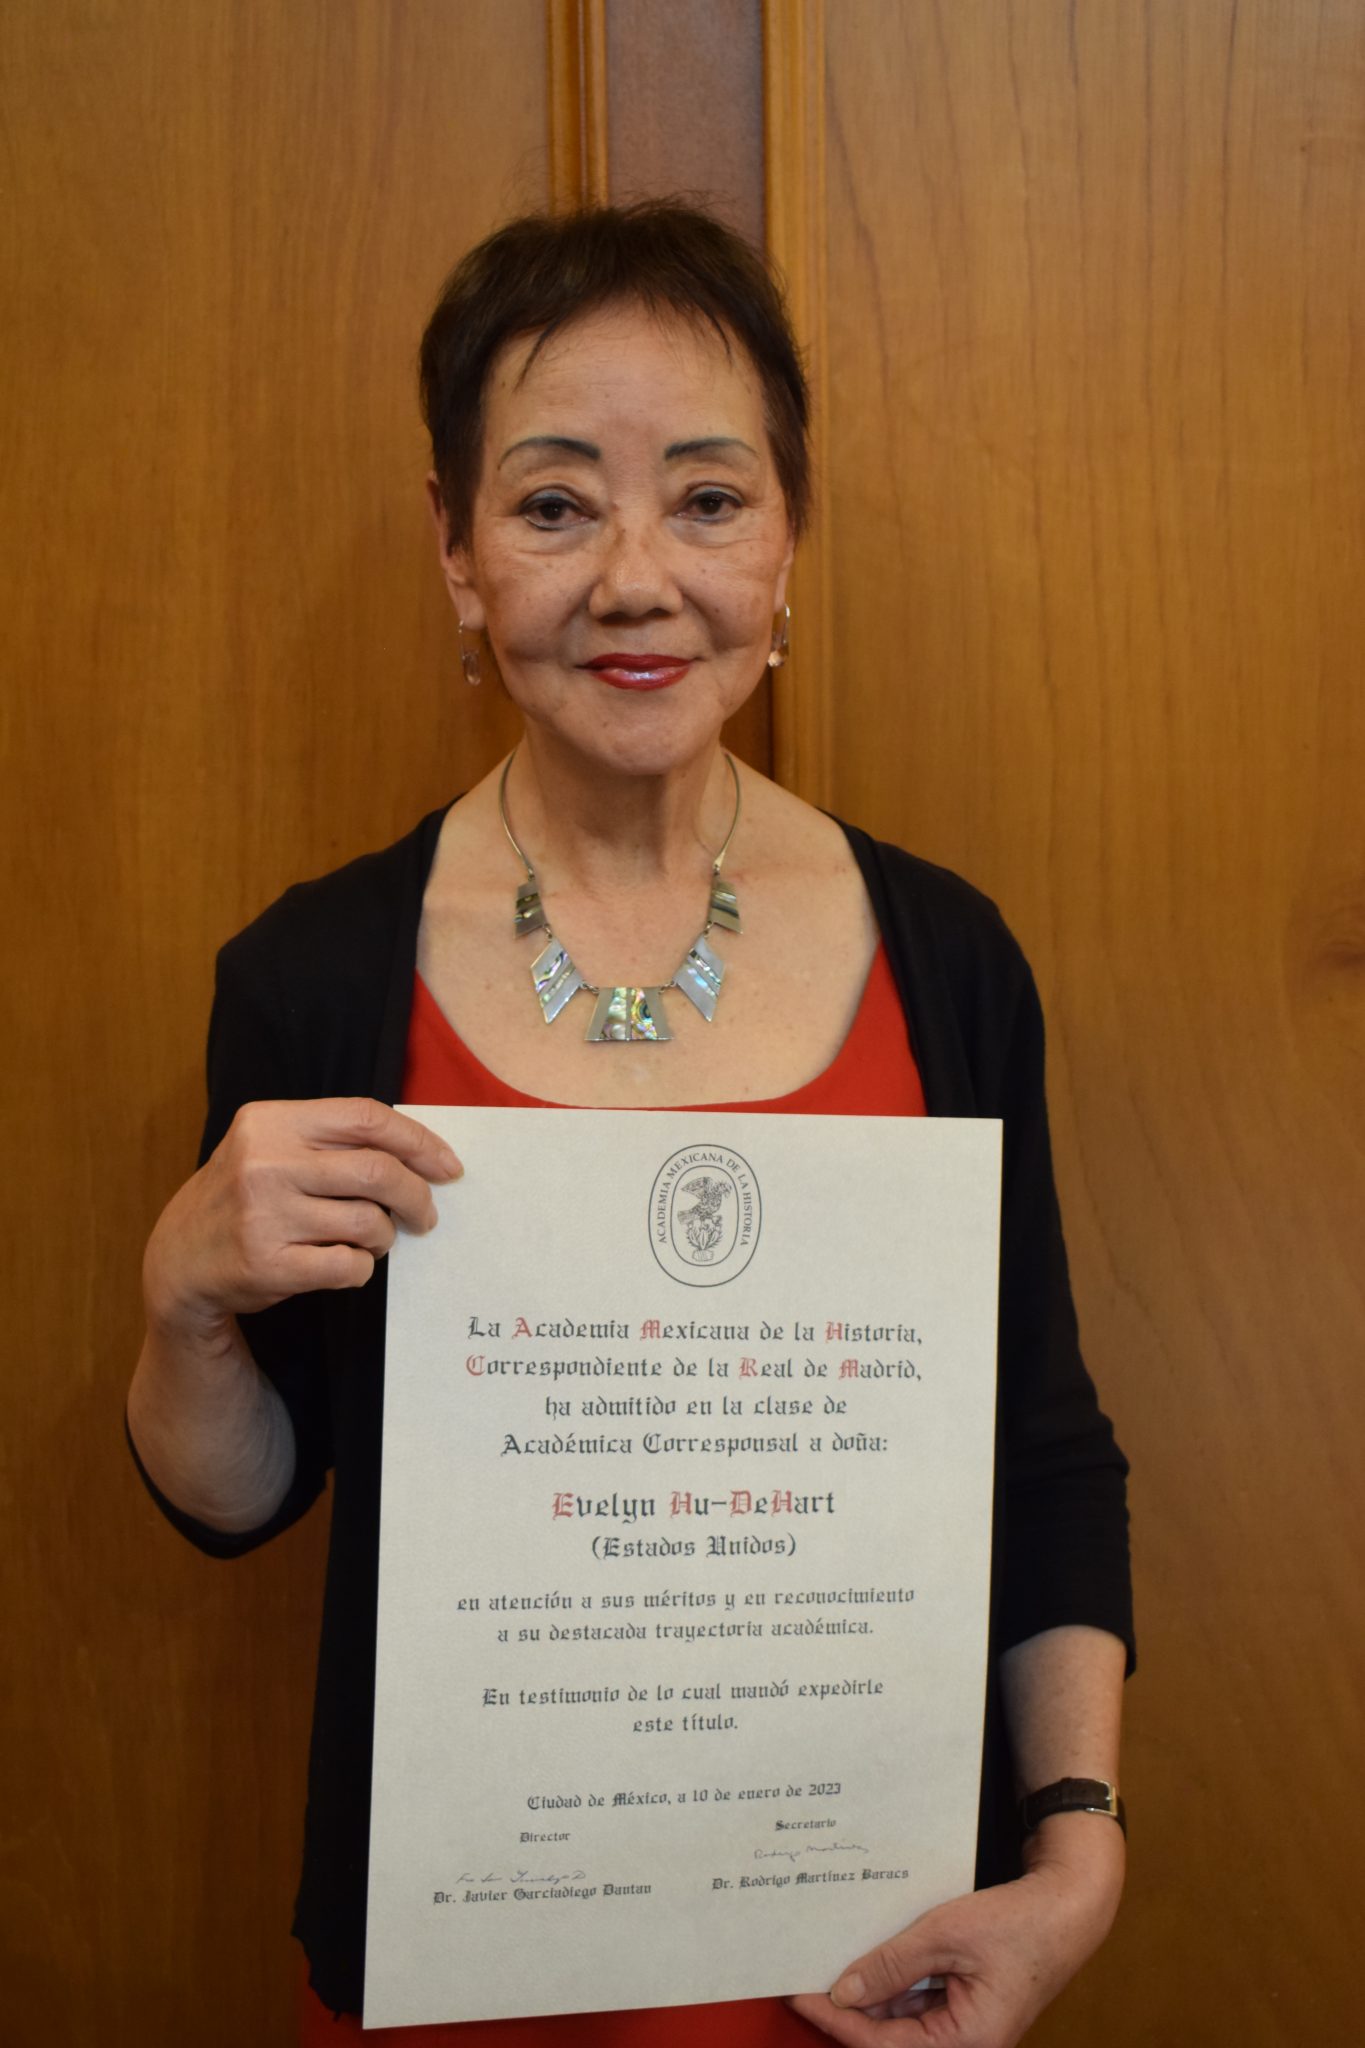 Evelyn Hu-De Hart, ceremonia de ingreso a la Academia Mexicana de la Historia, ...enero 2023